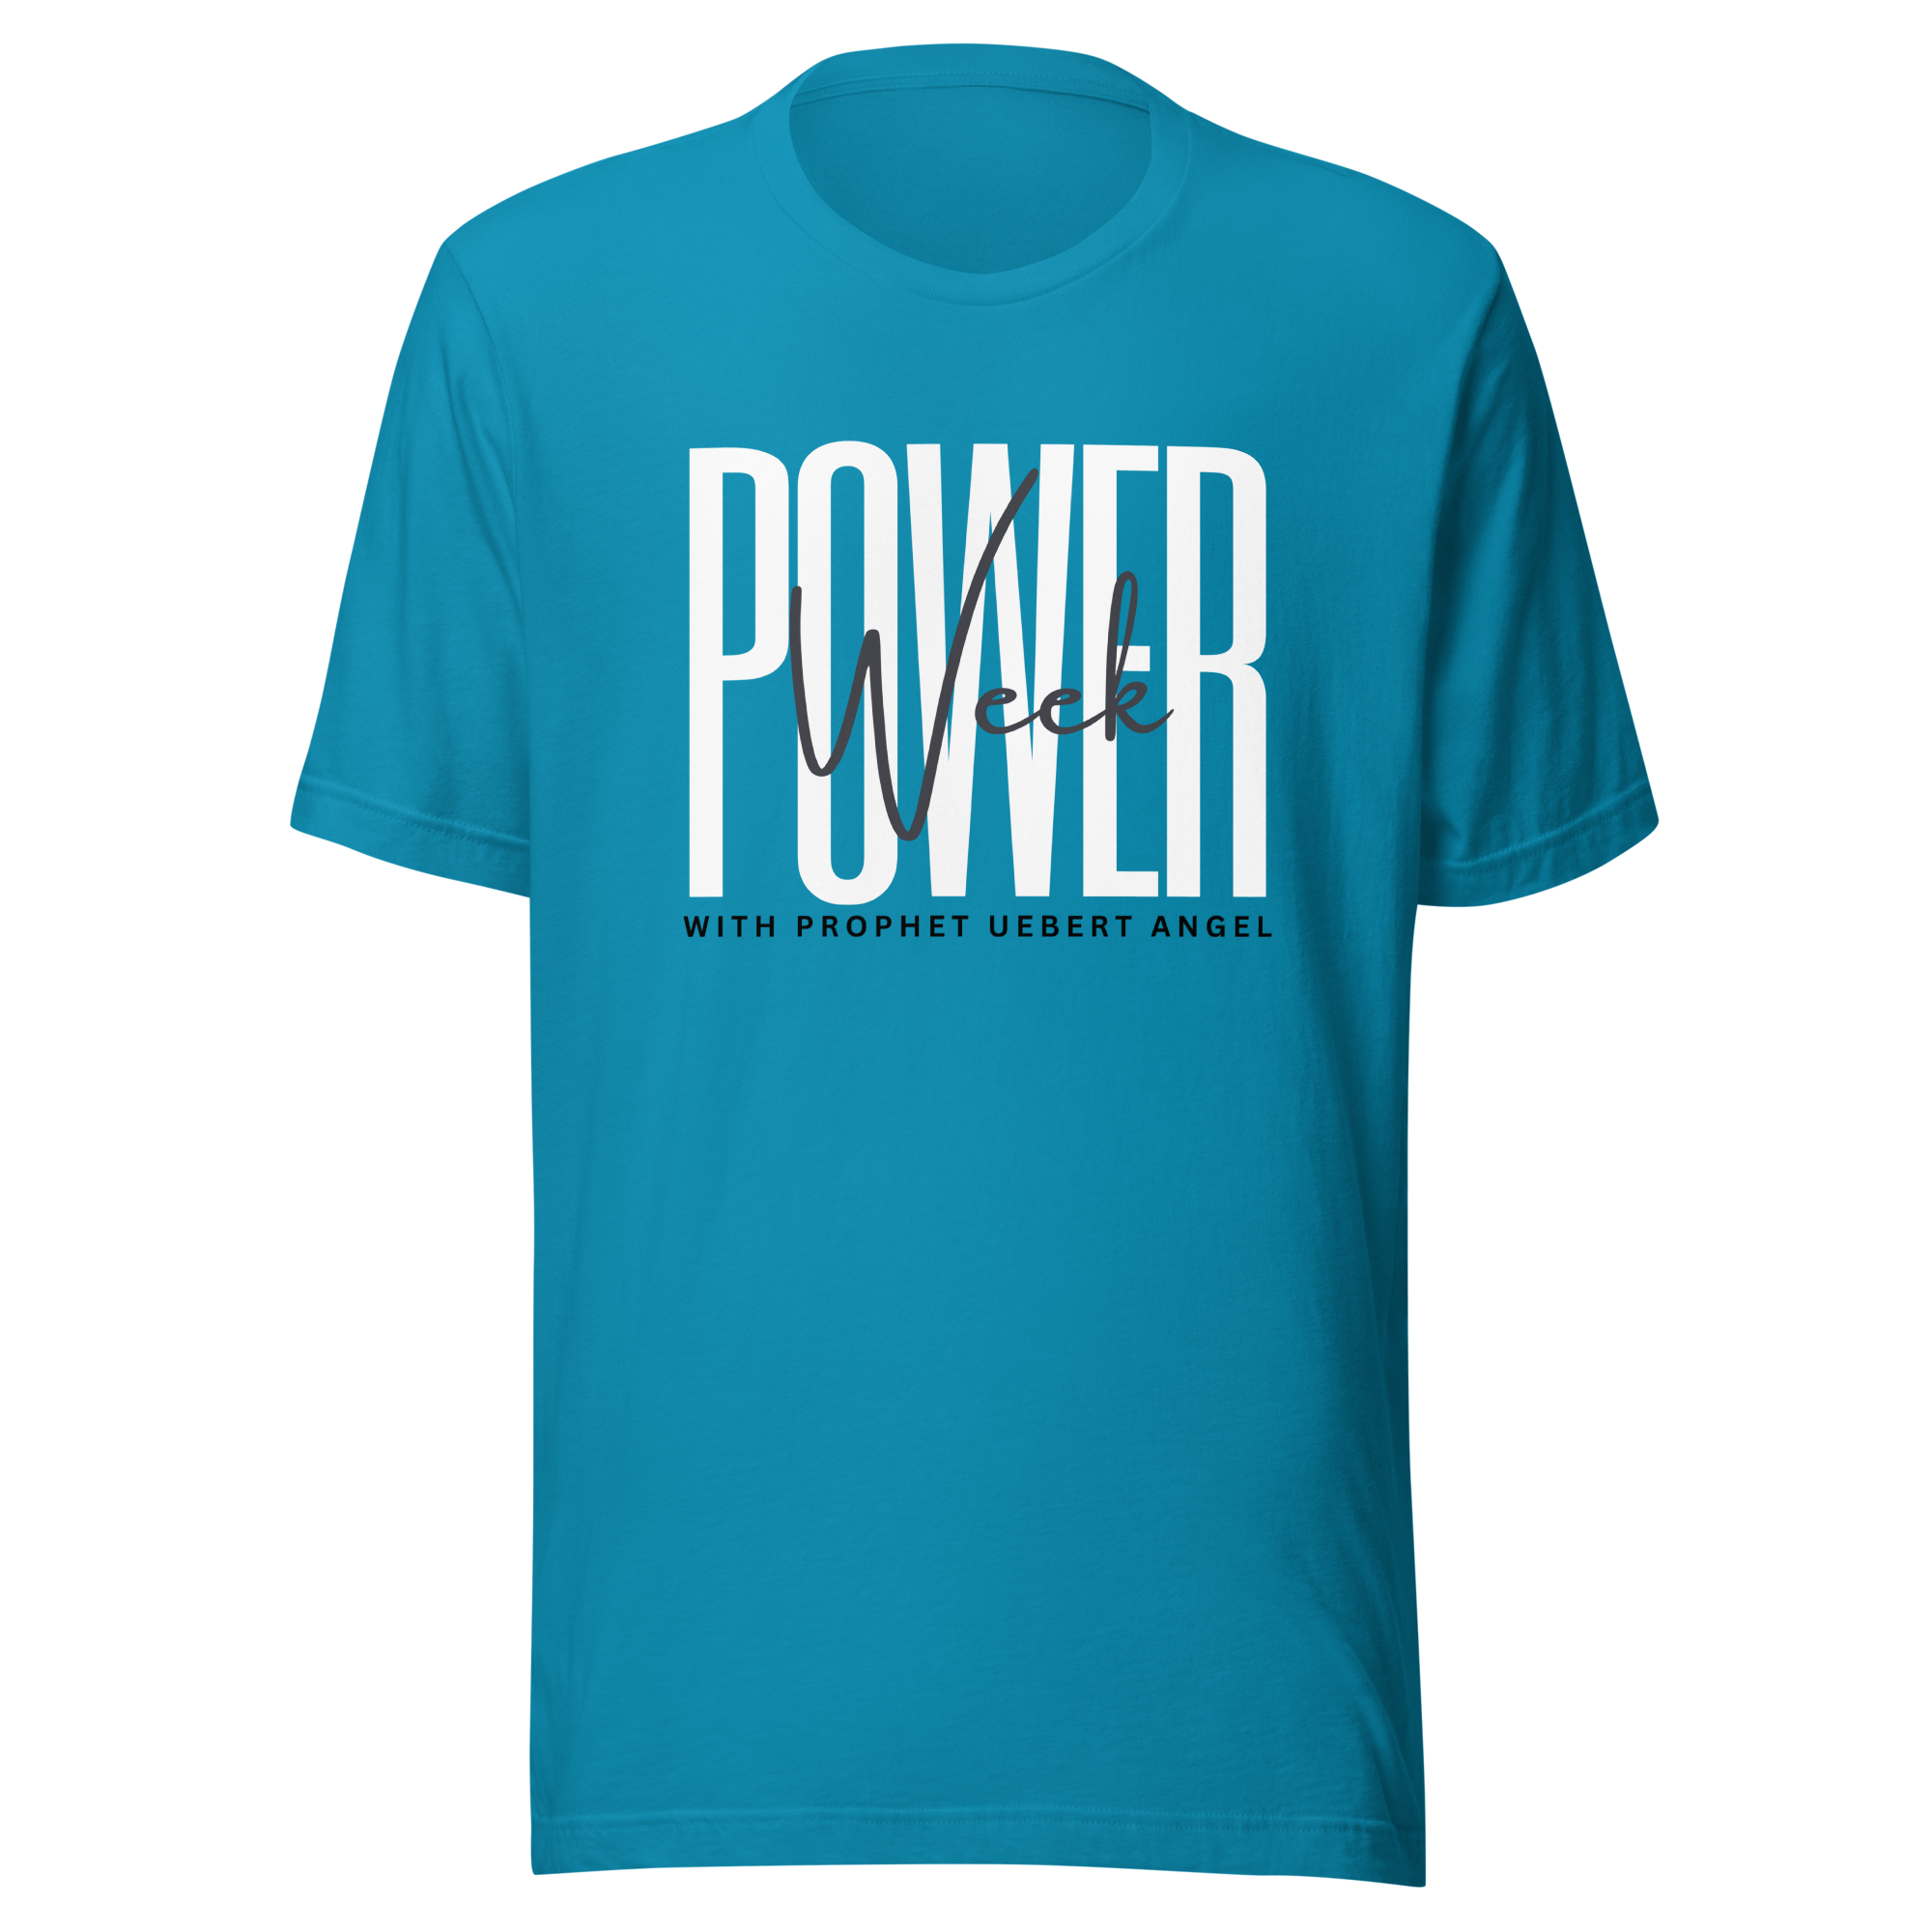 Power Week T-Shirt